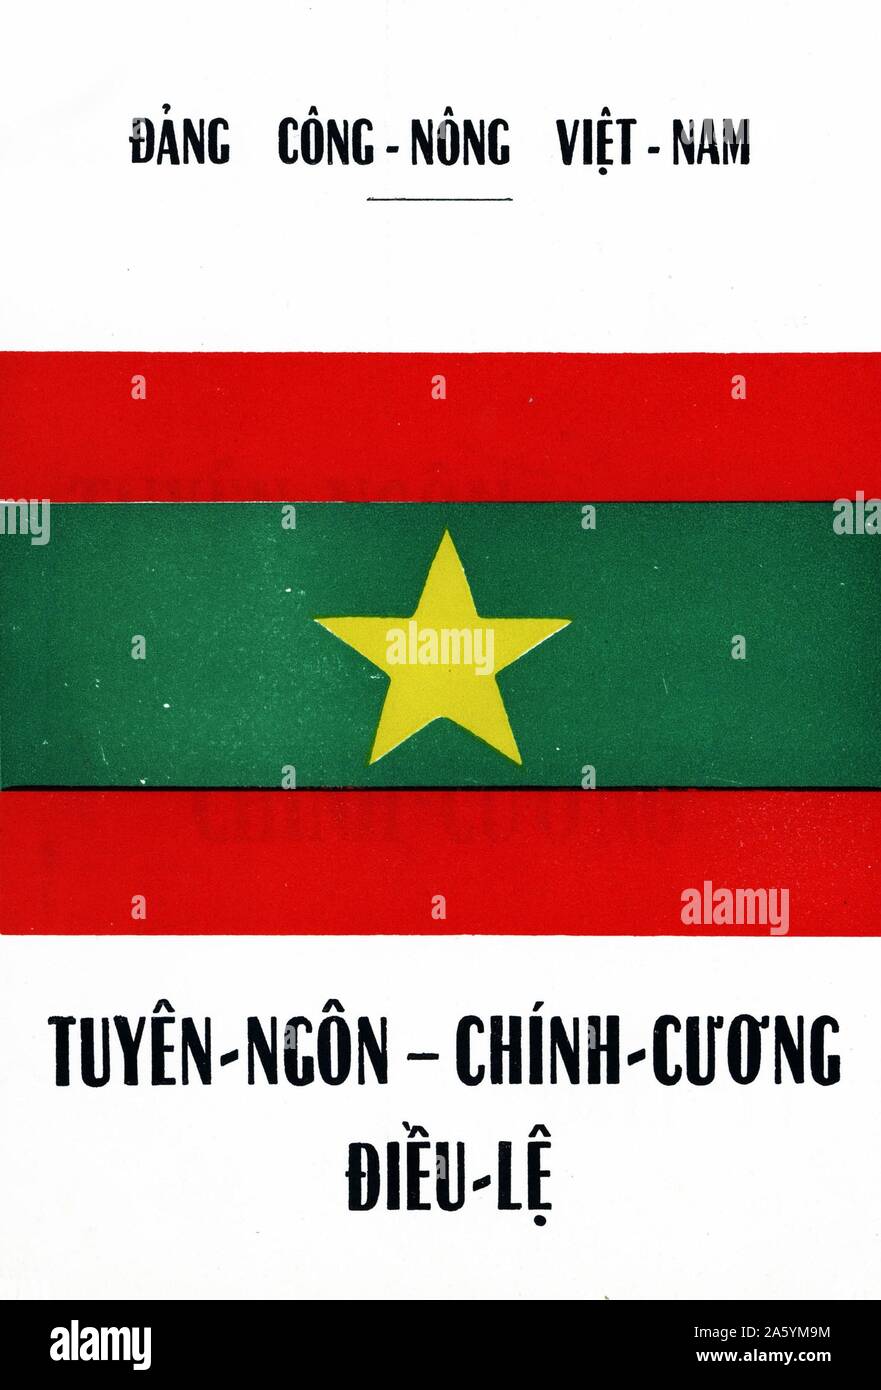 Copertina di un opuscolo sulla Dang Cong Nong (contadini e Partito dei Lavoratori) del Vietnam ha rilasciato durante la guerra del Vietnam Foto Stock